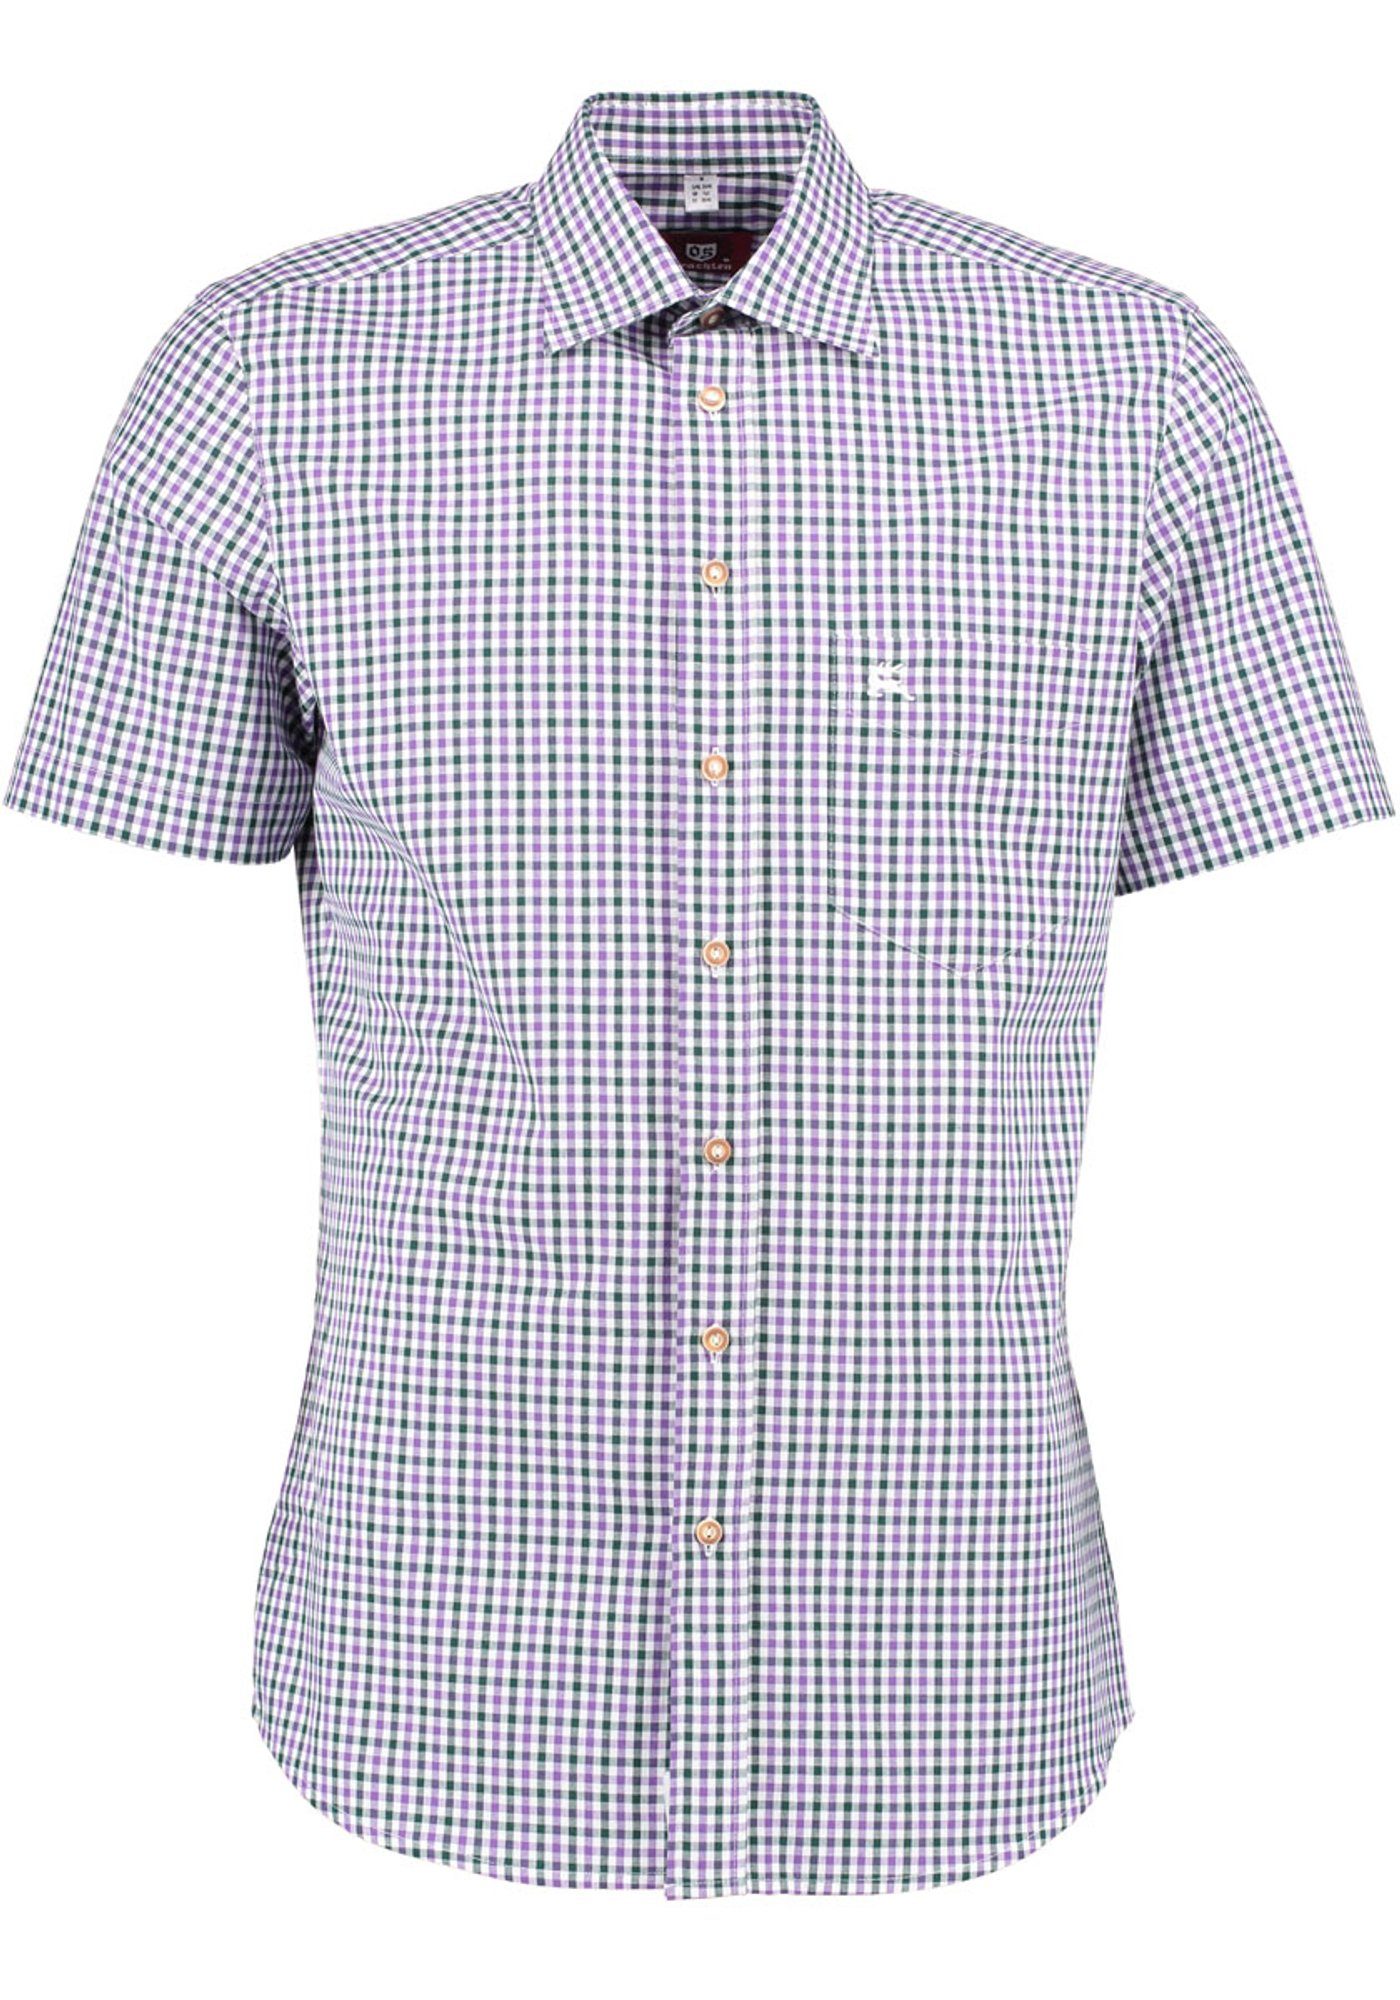 OS-Trachten Trachtenhemd Purli Kurzarmhemd mit Hirsch-Stickerei auf der Brusttasche lila